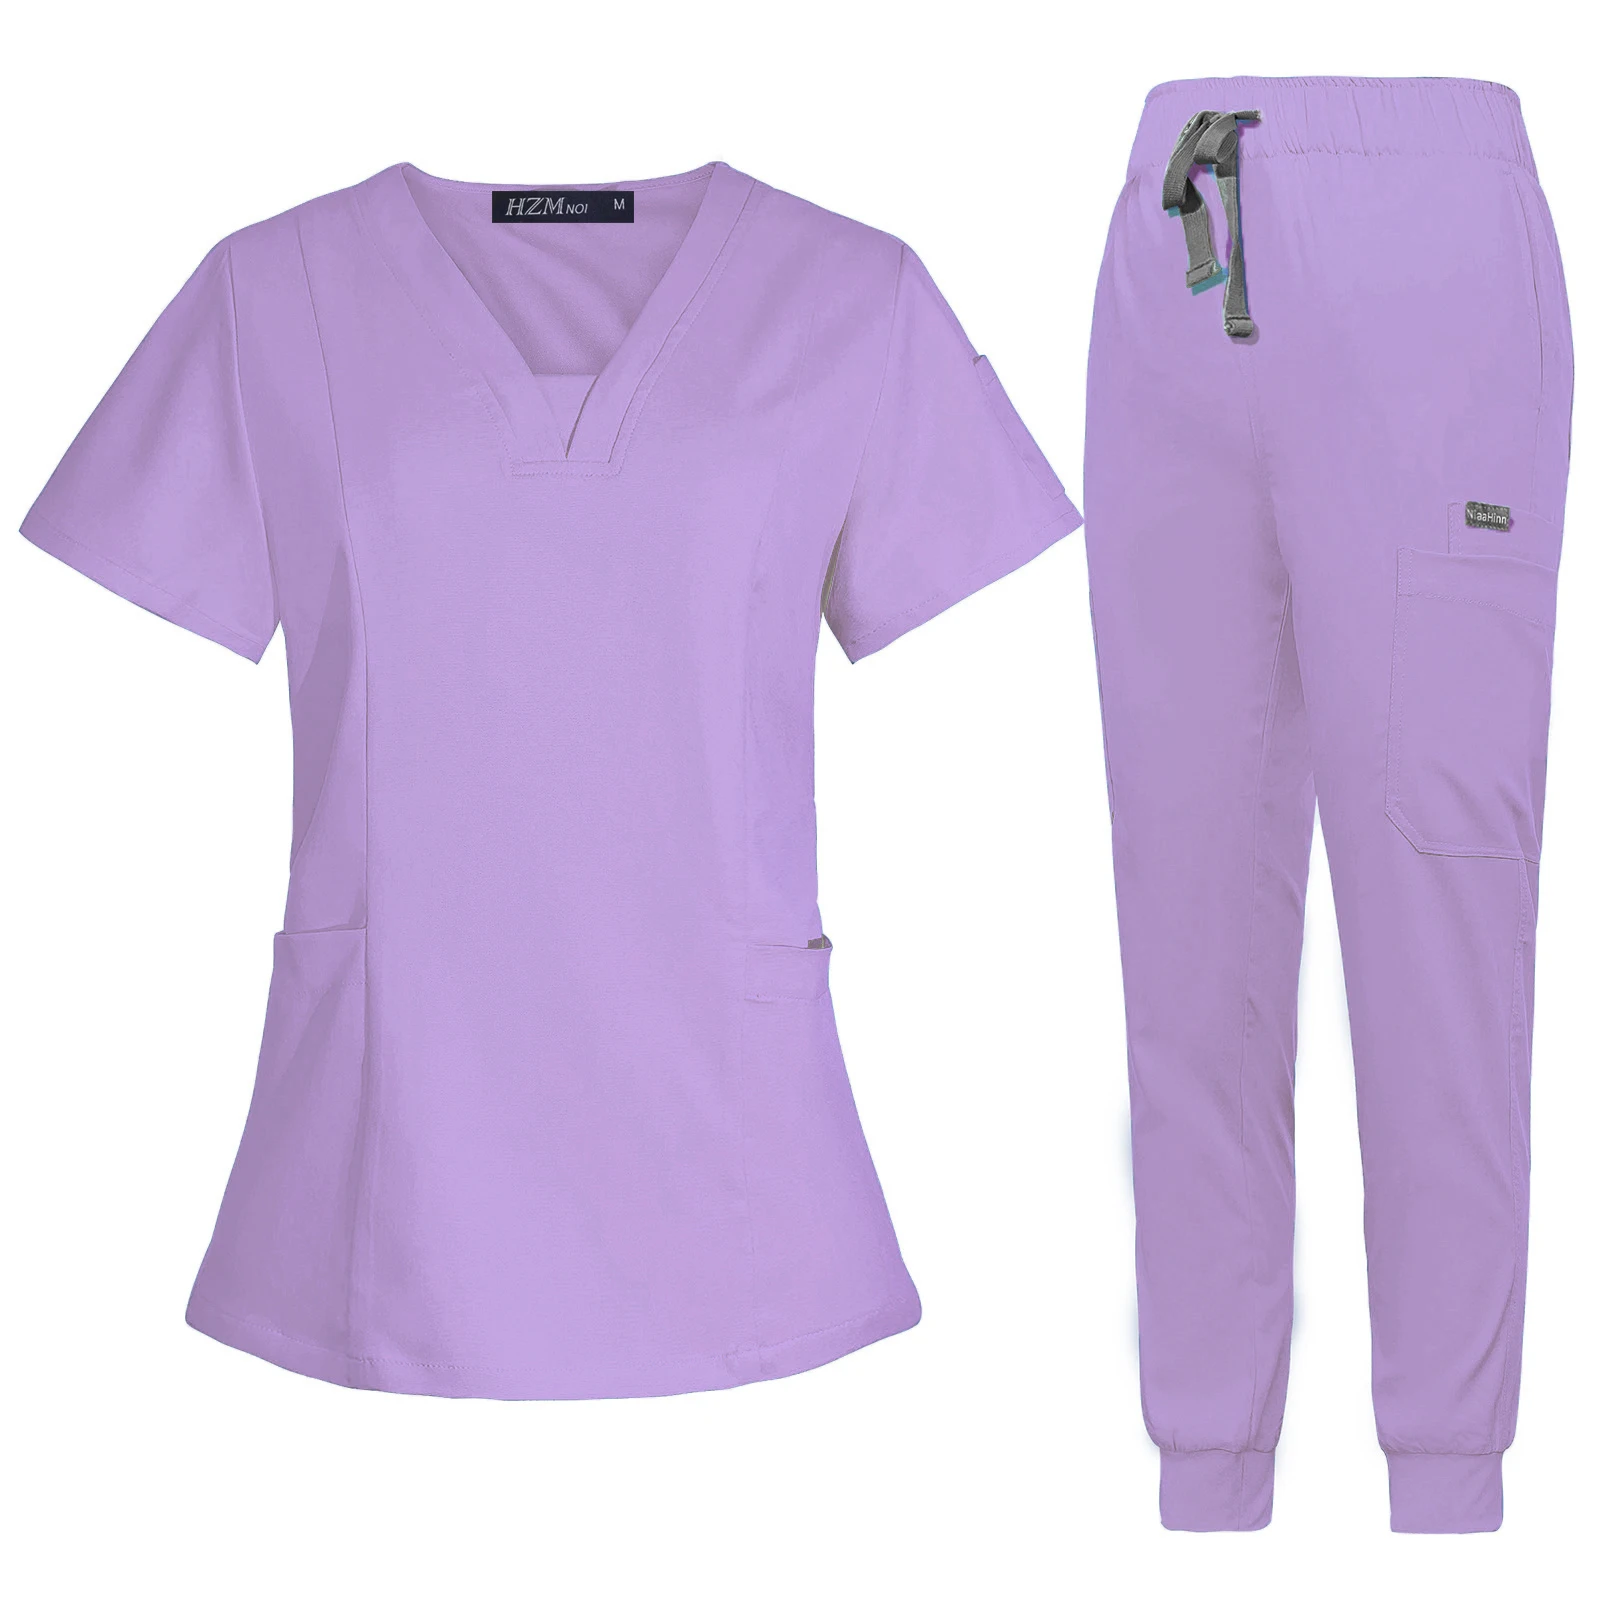 Commercio all'ingrosso sala operatoria uniforme medica Scrub ospedale lavoro Scrub Set forniture infermieristiche infermiera chirurgia dentale tuta abbigliamento da lavoro